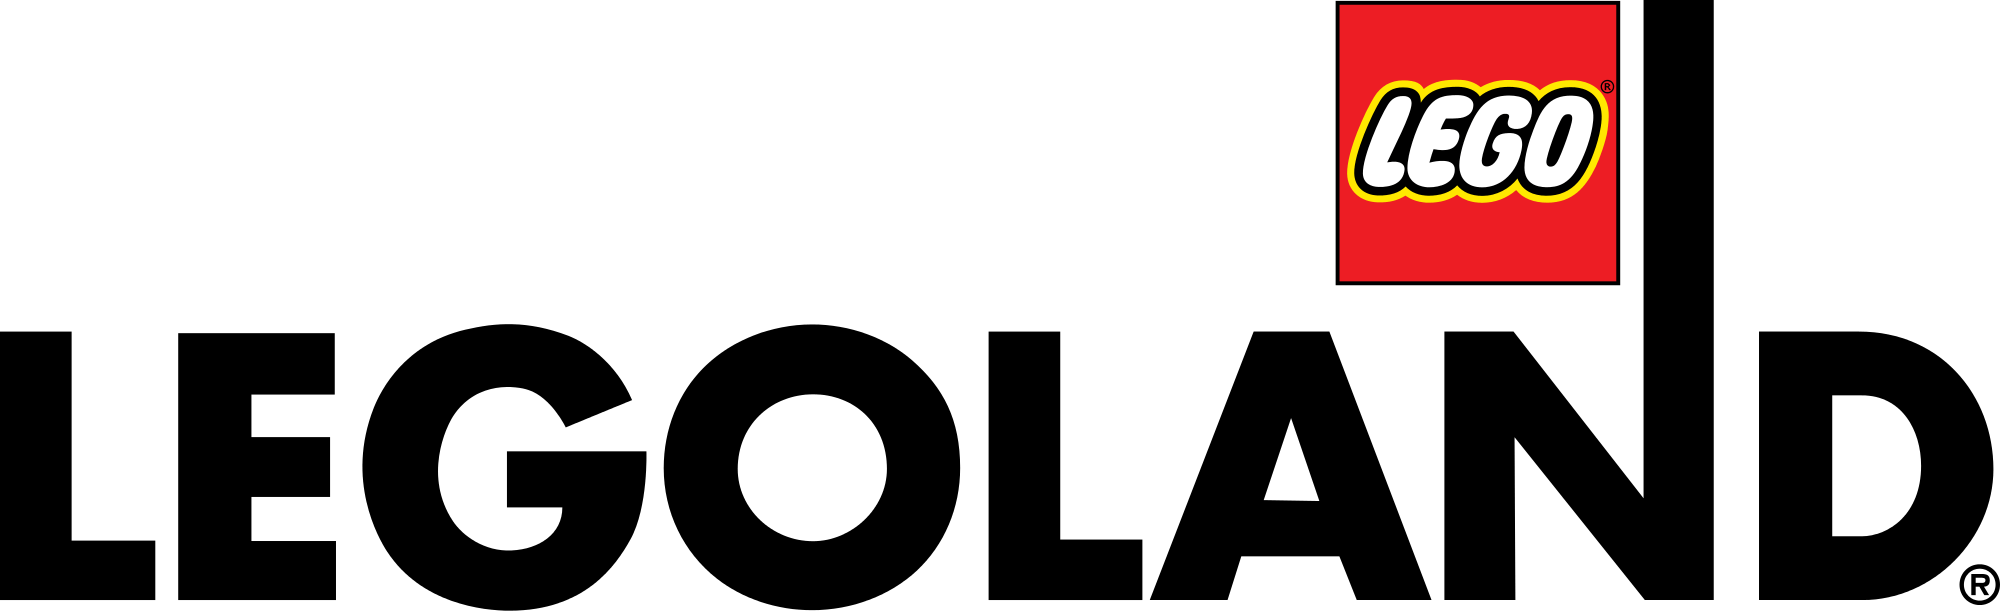 legoland malaysia logo